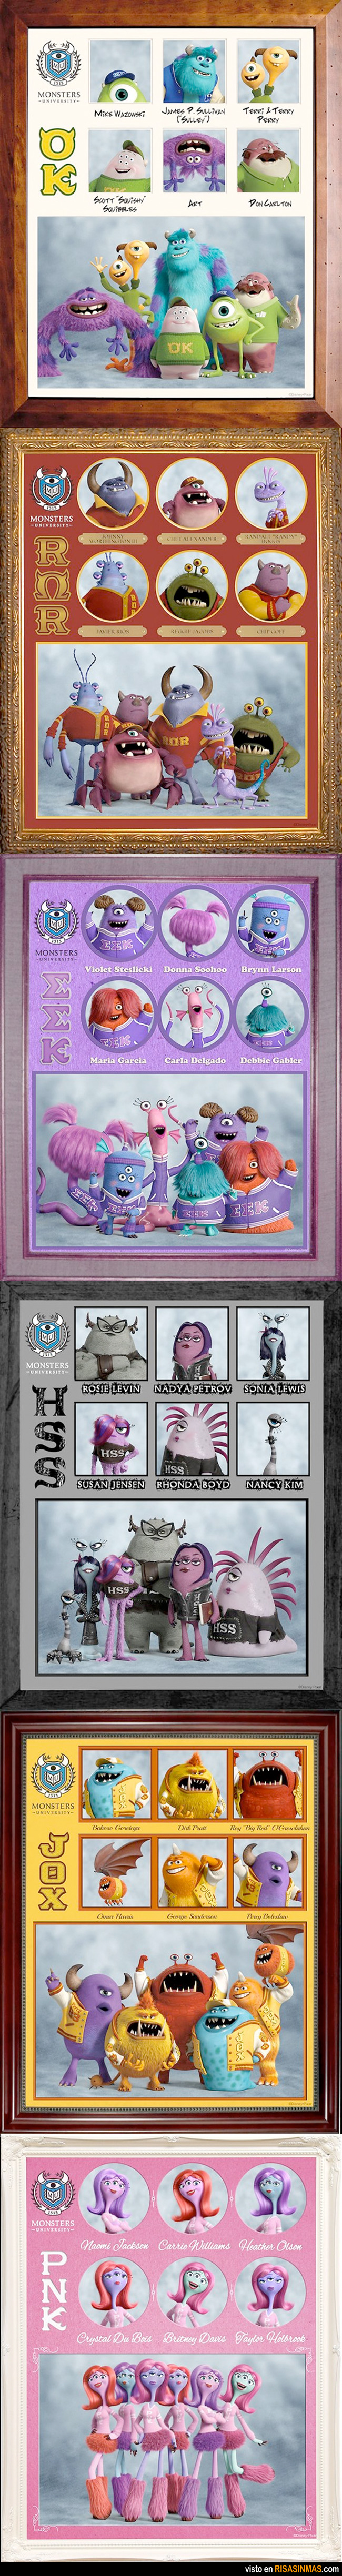 Todos los personajes de Monsters University